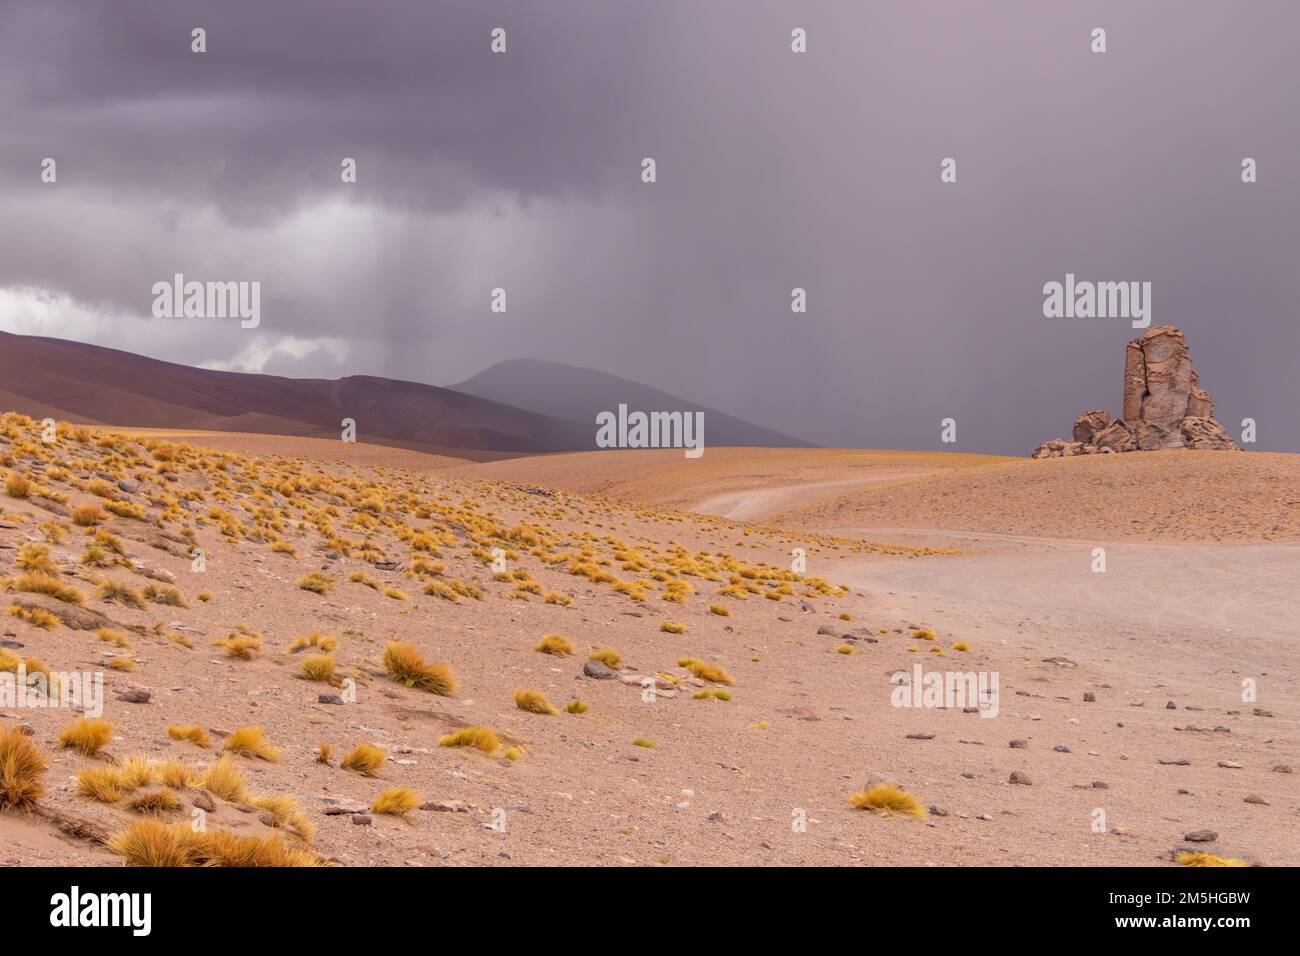 Rochers instables de Monjes de la Pacana au milieu du désert d'Atacama au Chili Banque D'Images